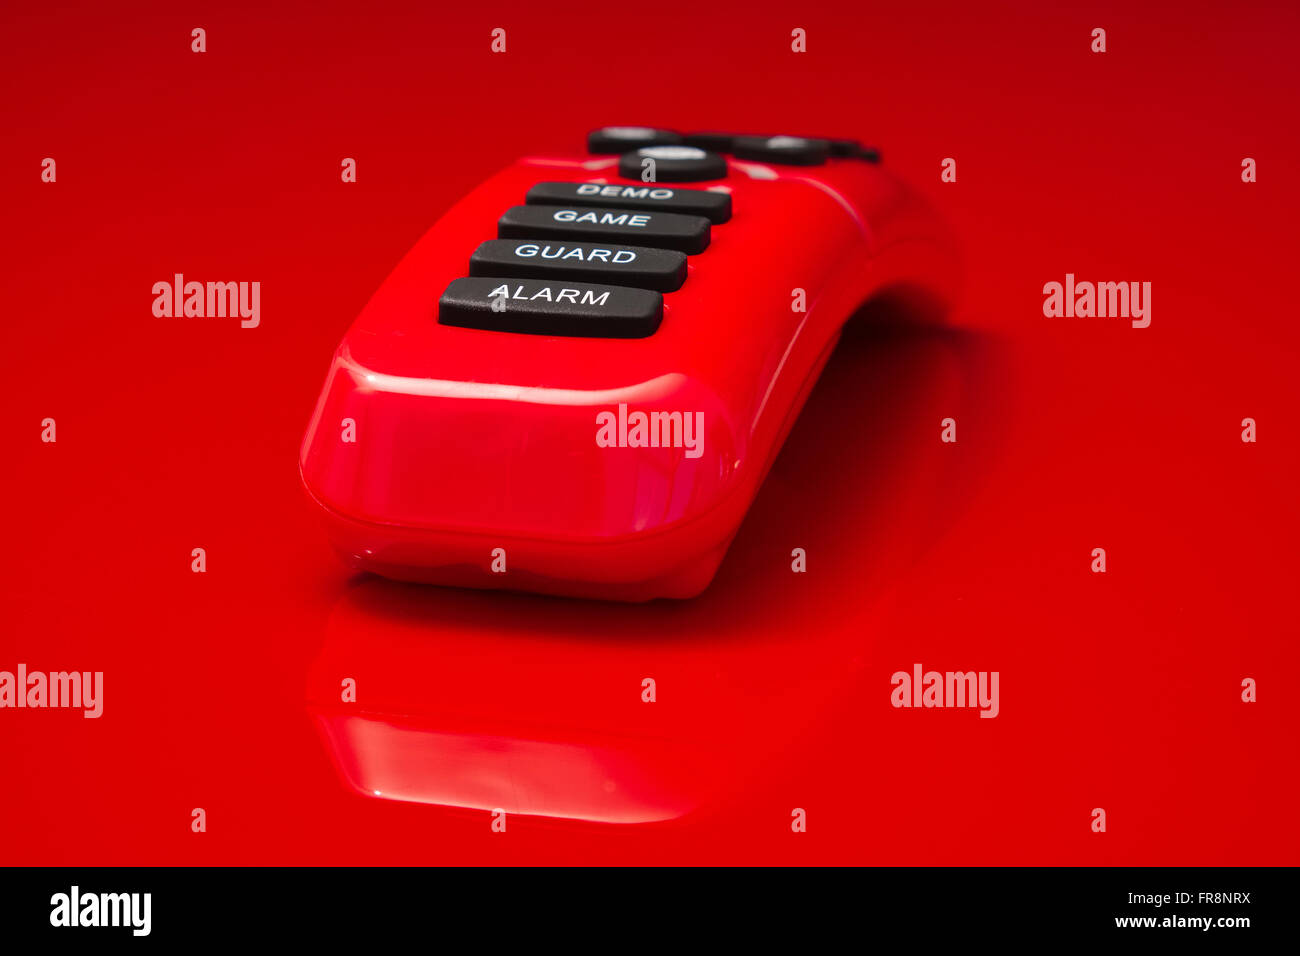 rot glänzende Fernbedienung liegen auf roten Spiegelung Oberfläche, Alarm, Wache, Spiel und Demo ist auf die Tasten aufgedruckt. Stockfoto